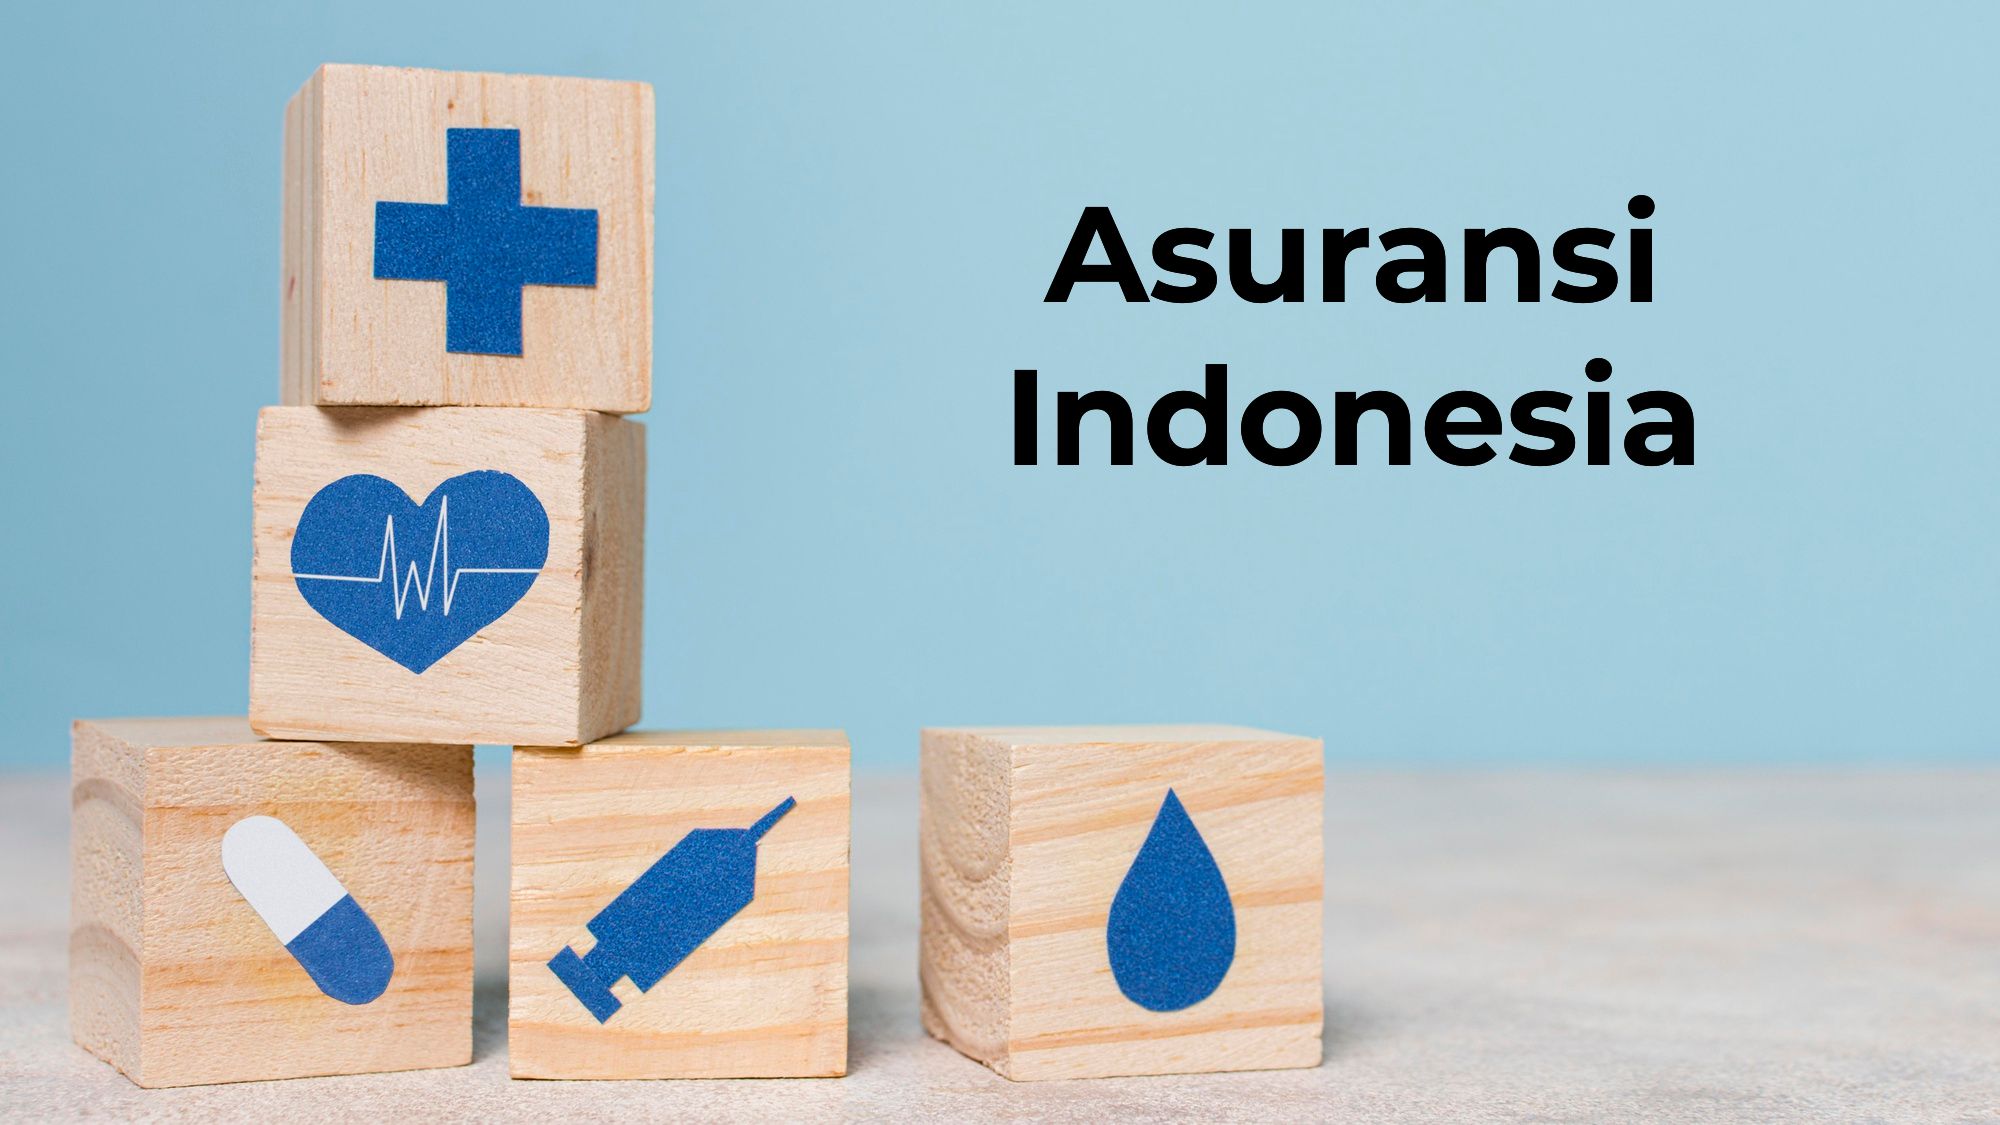 Asuransi Indonesia kesehatan